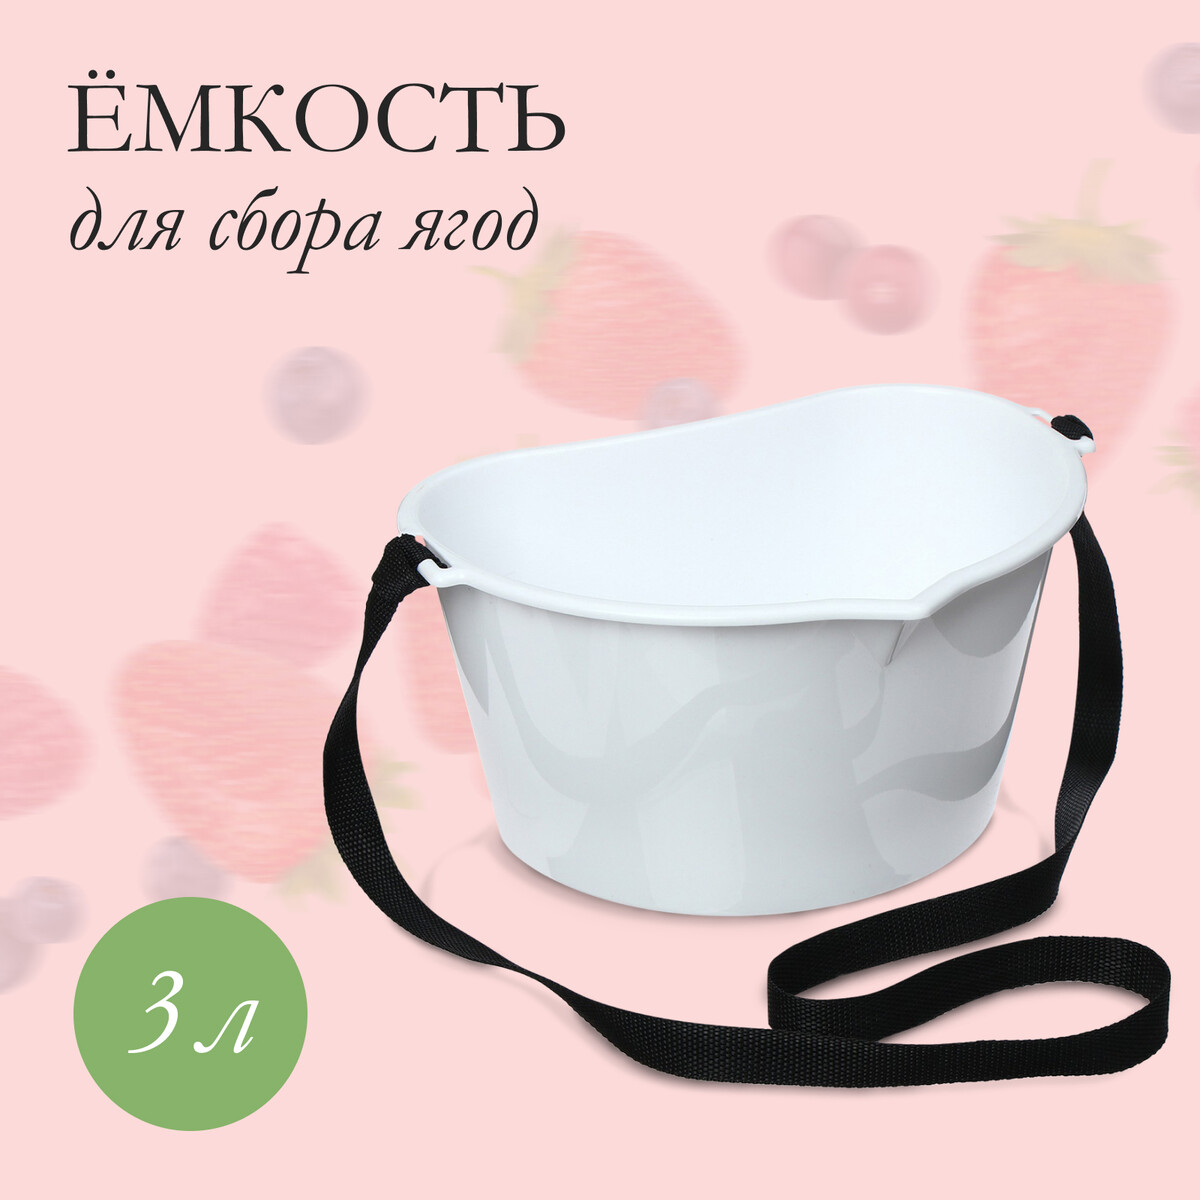 Ёмкость для сбора ягод, 3 л, белая корзина плетеная 22 х 12 28 см белая ива